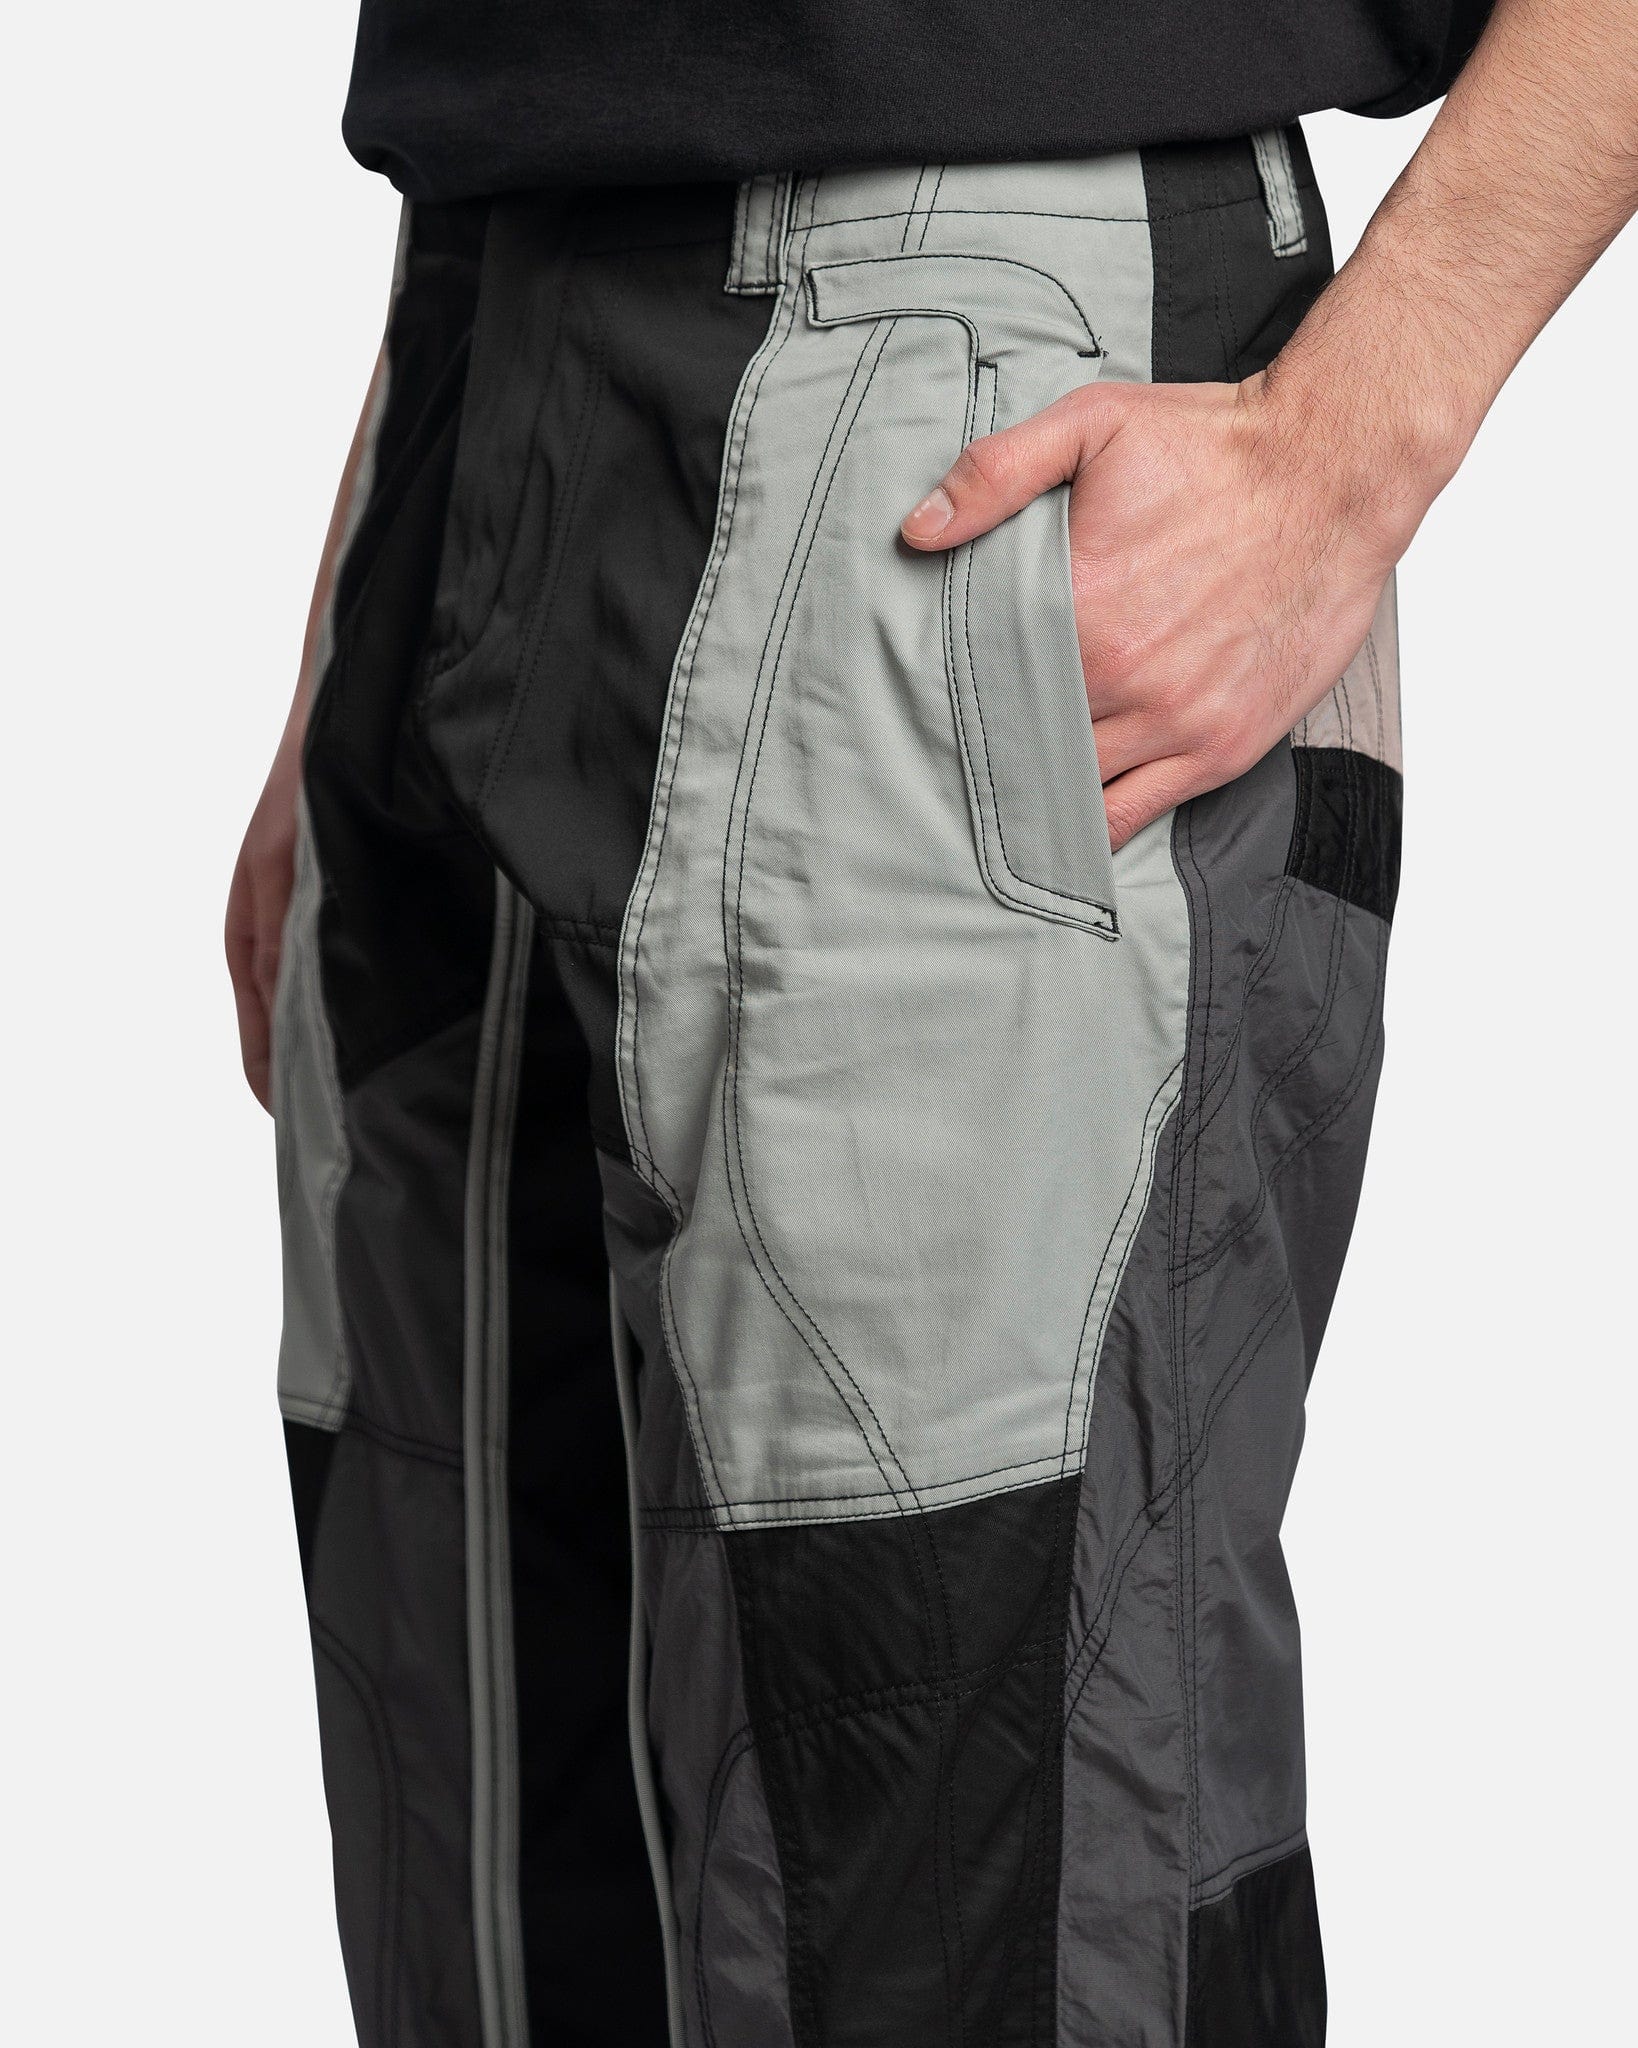 FFFPOSTALSERVICE Men's Pants Flight Paneled Trouser in Black/Grey